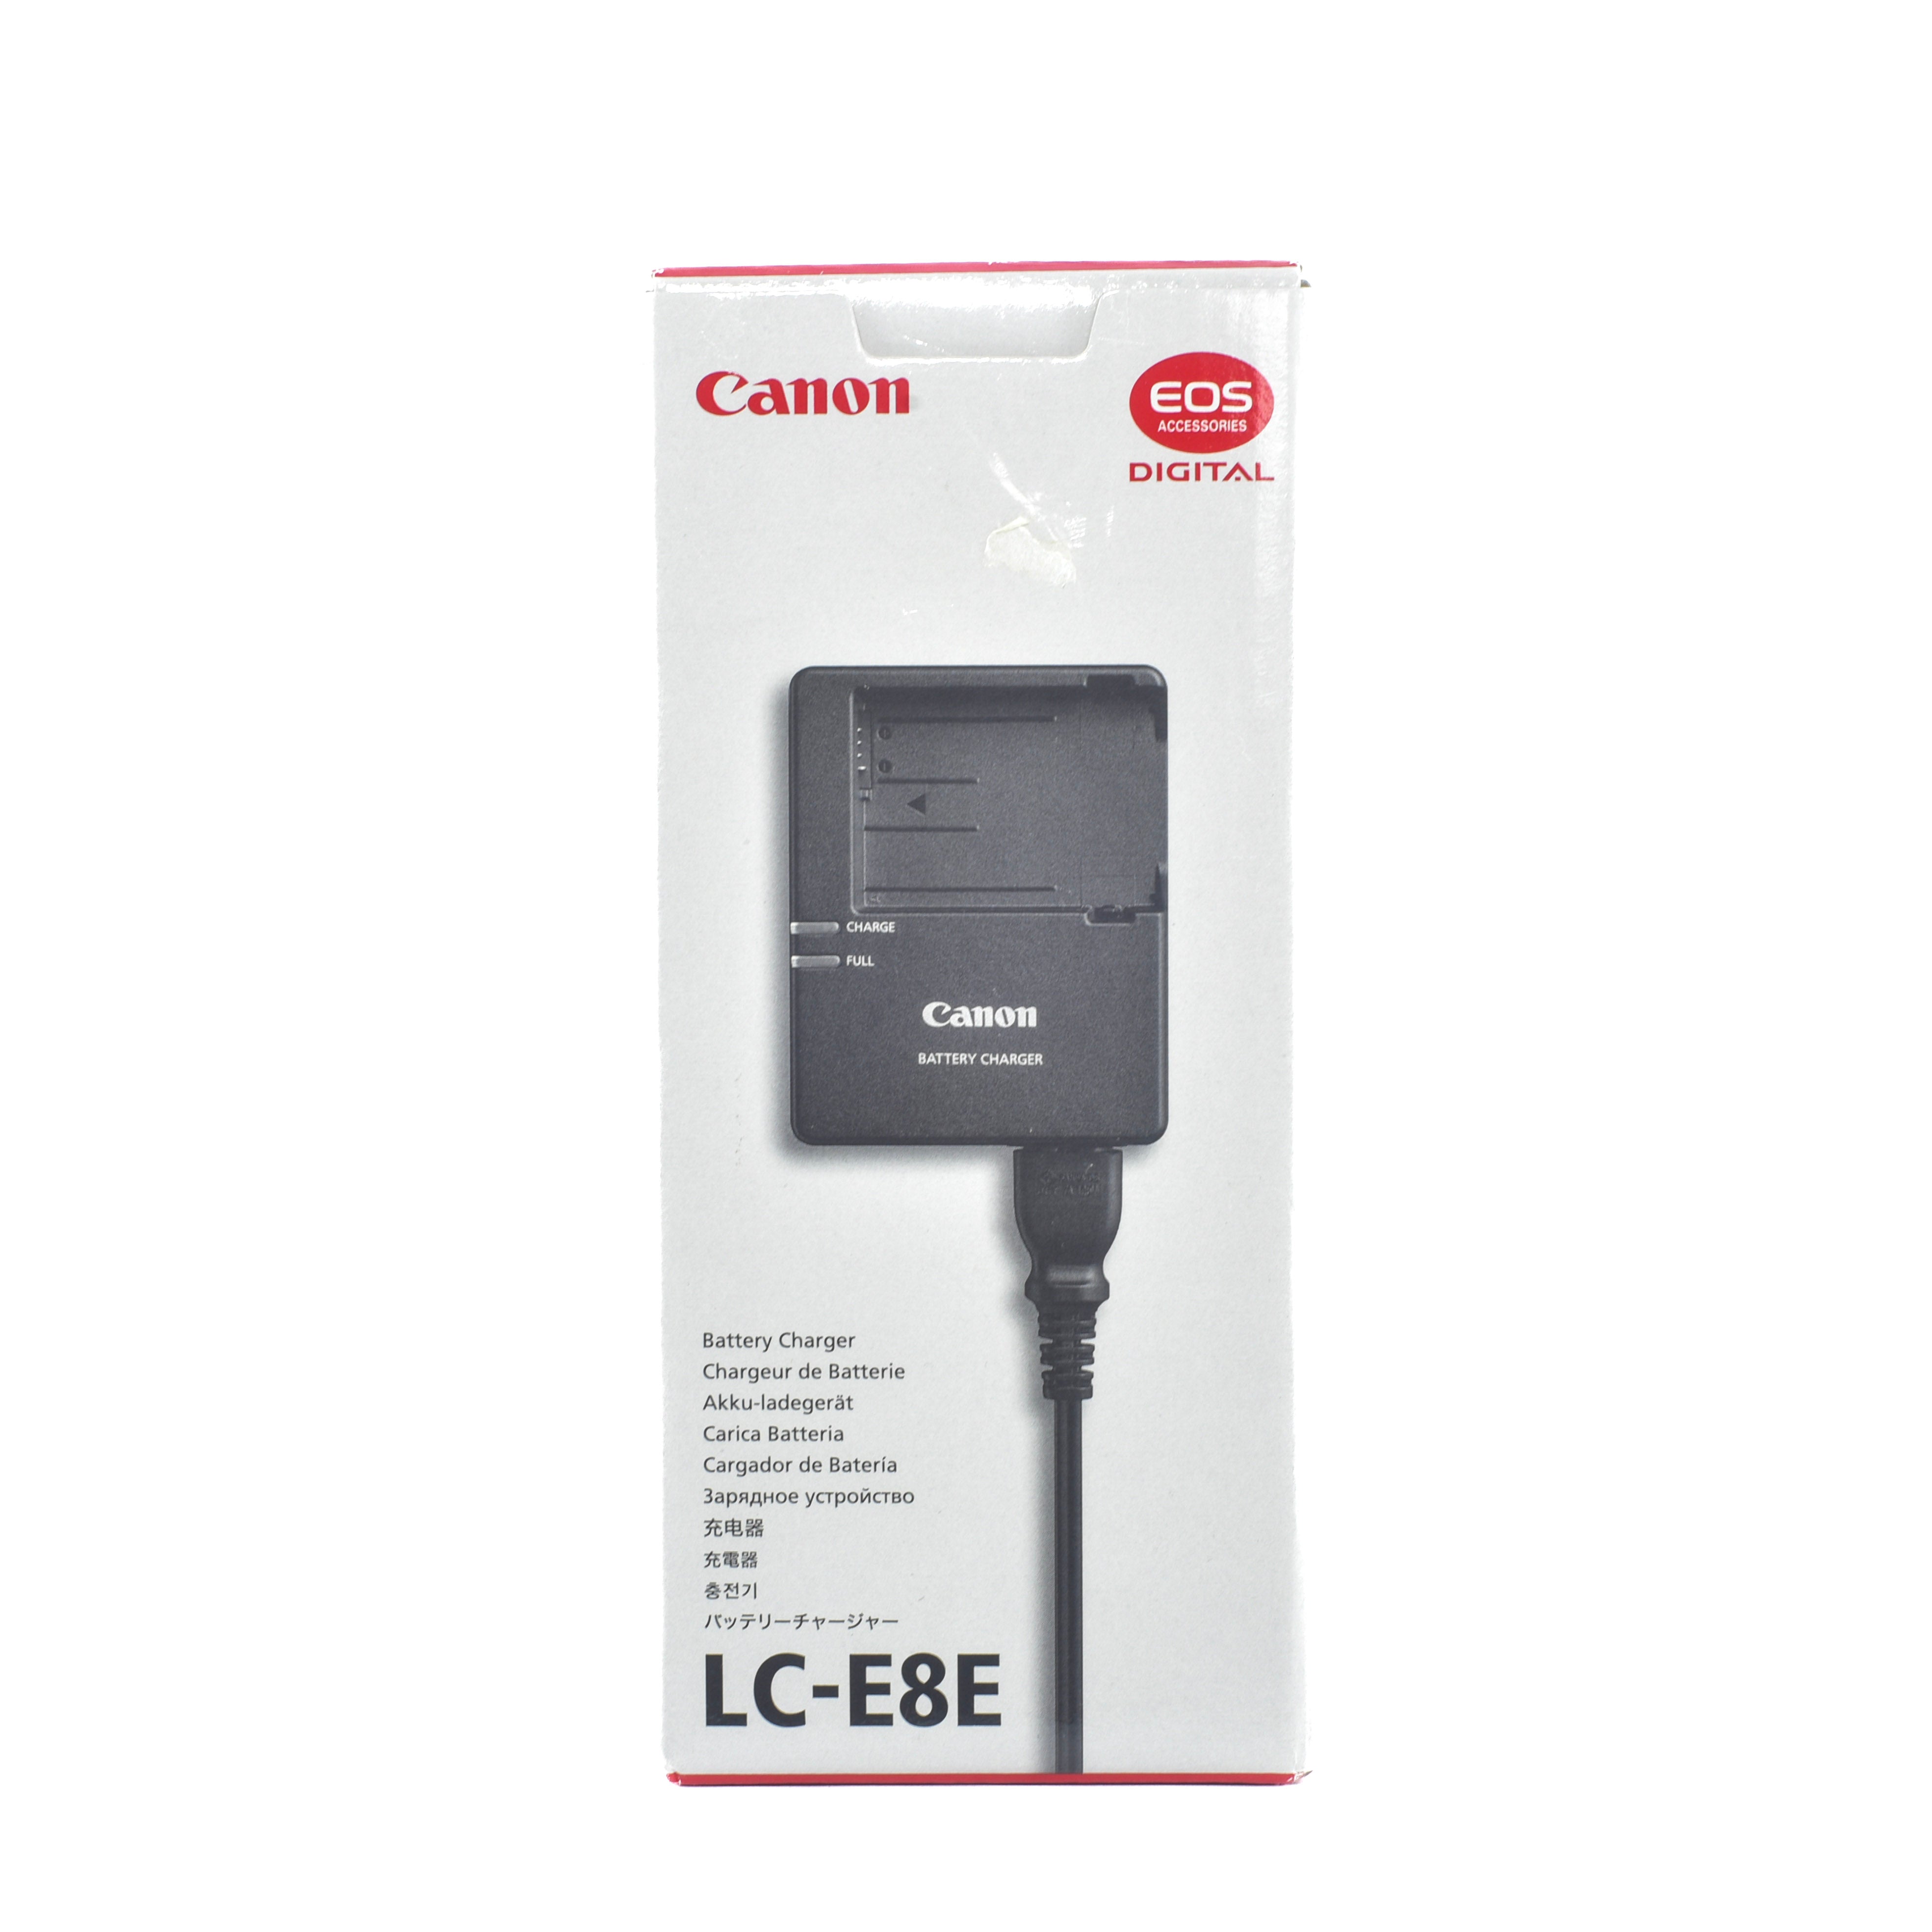 Canon LC-E8E Charger